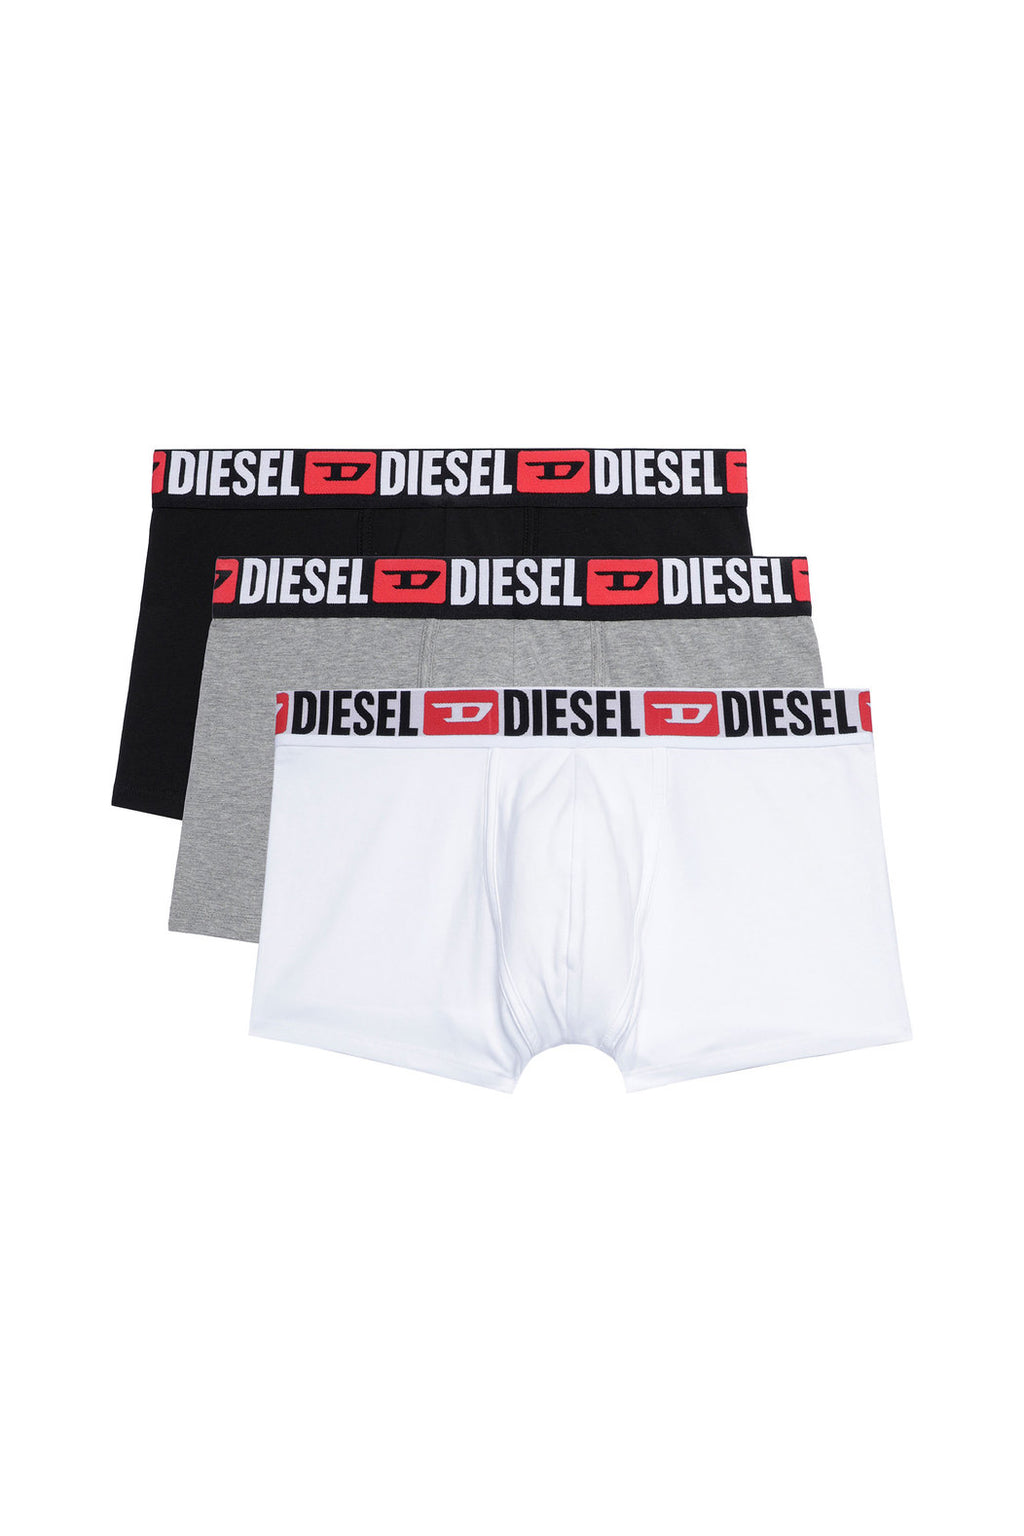 Diesel Damien 5 Pack Underwear